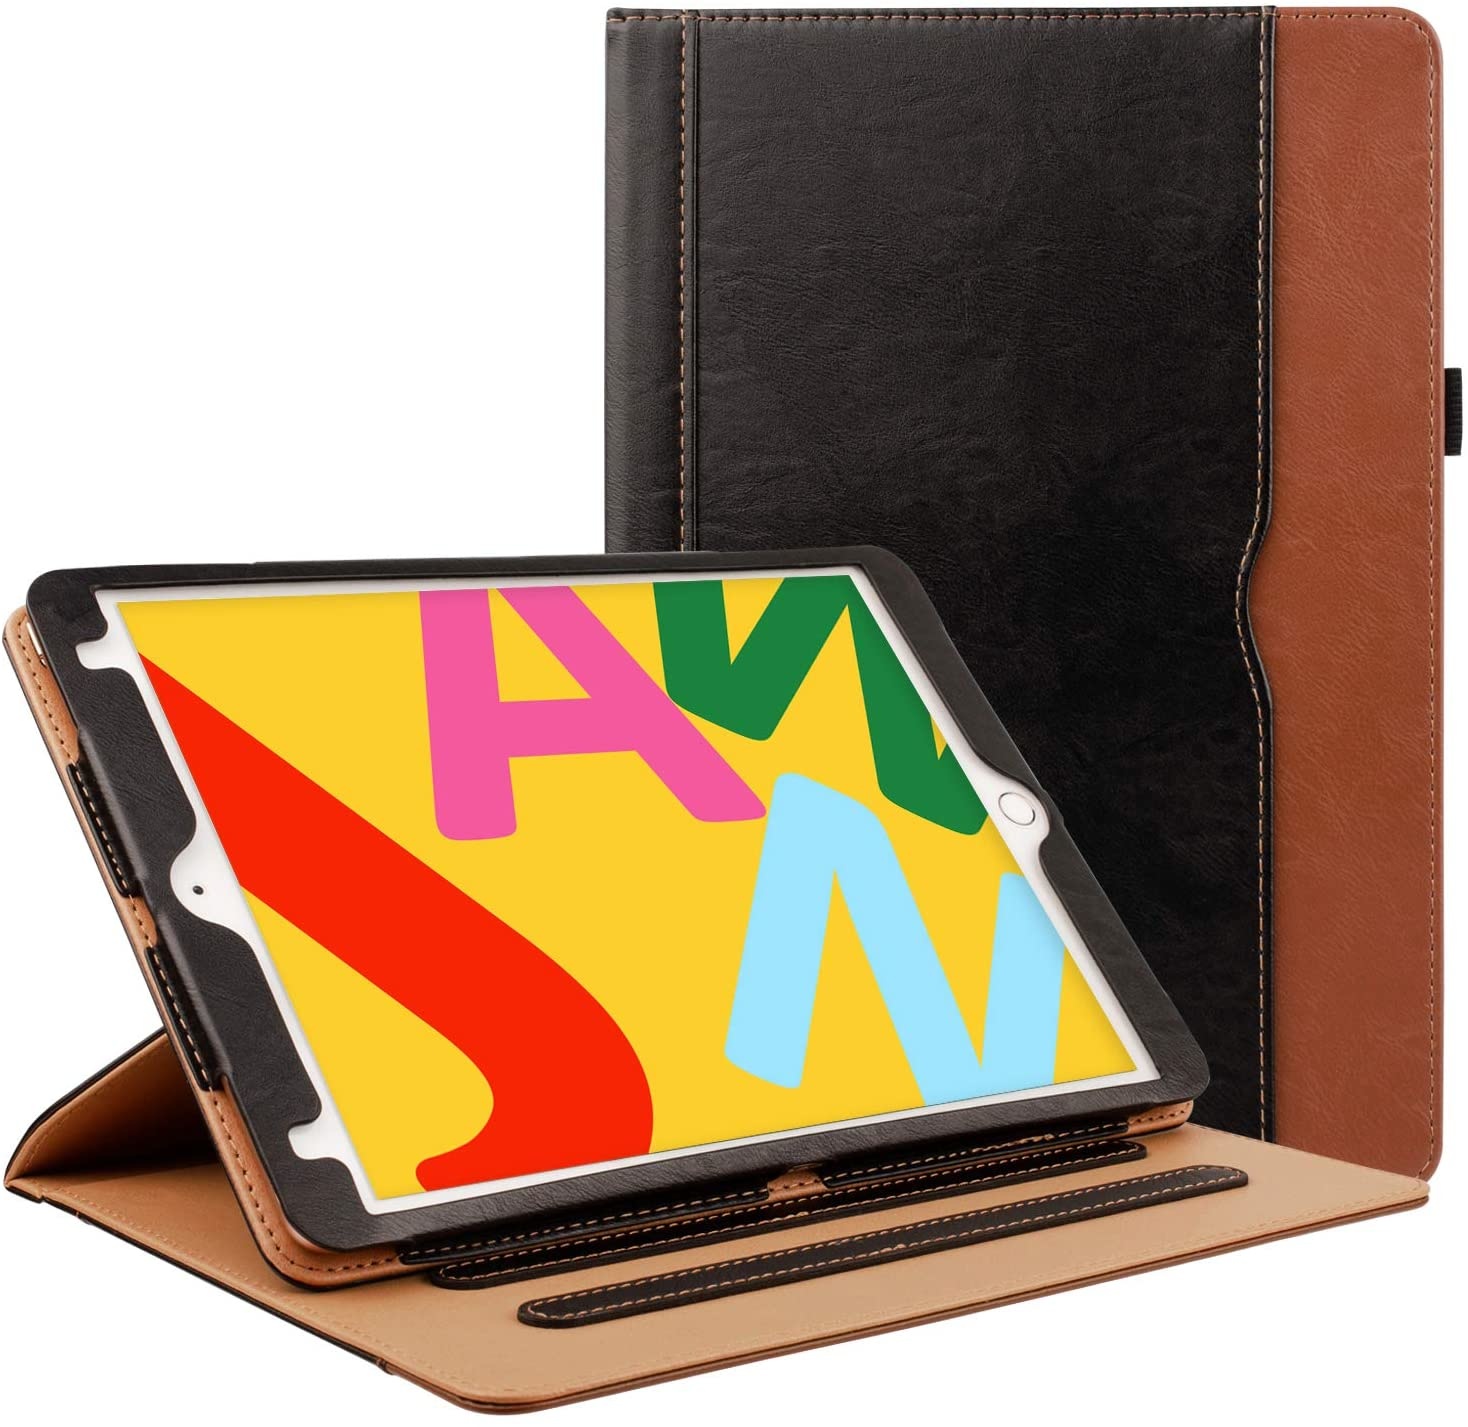 Ga lekker liggen Voorschrijven Kunstmatig iPad hoes 2020/2021 10.2 Inch luxe leer bruin zwart kopen? - iPadspullekes